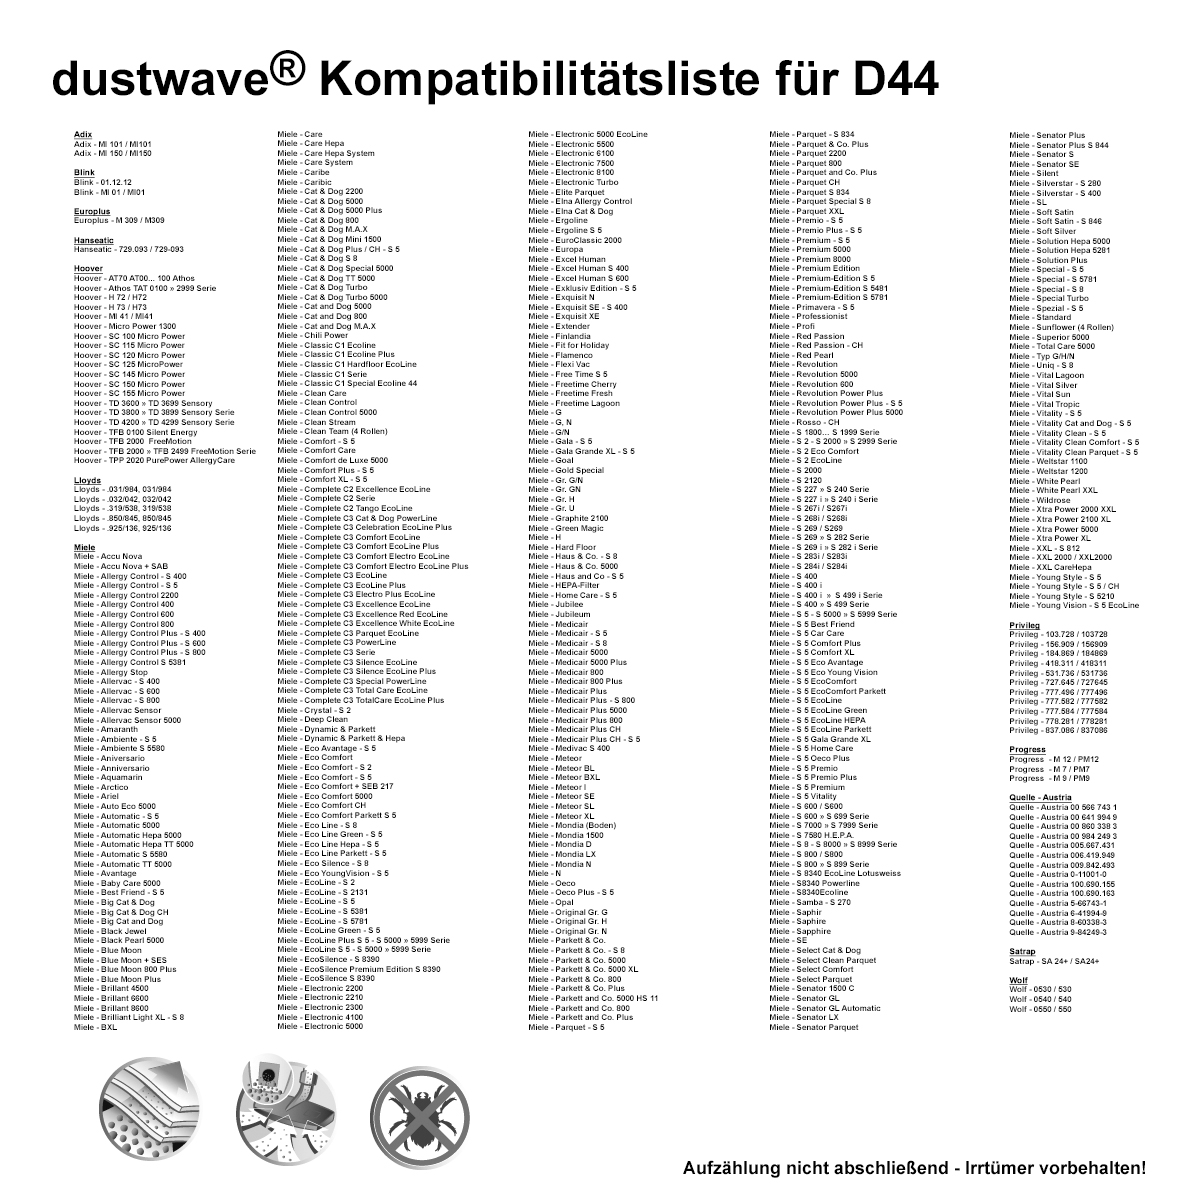 Dustwave® 20 Staubsaugerbeutel für Miele S406i / S 406 i - hocheffizient, mehrlagiges Mikrovlies mit Hygieneverschluss - Made in Germany